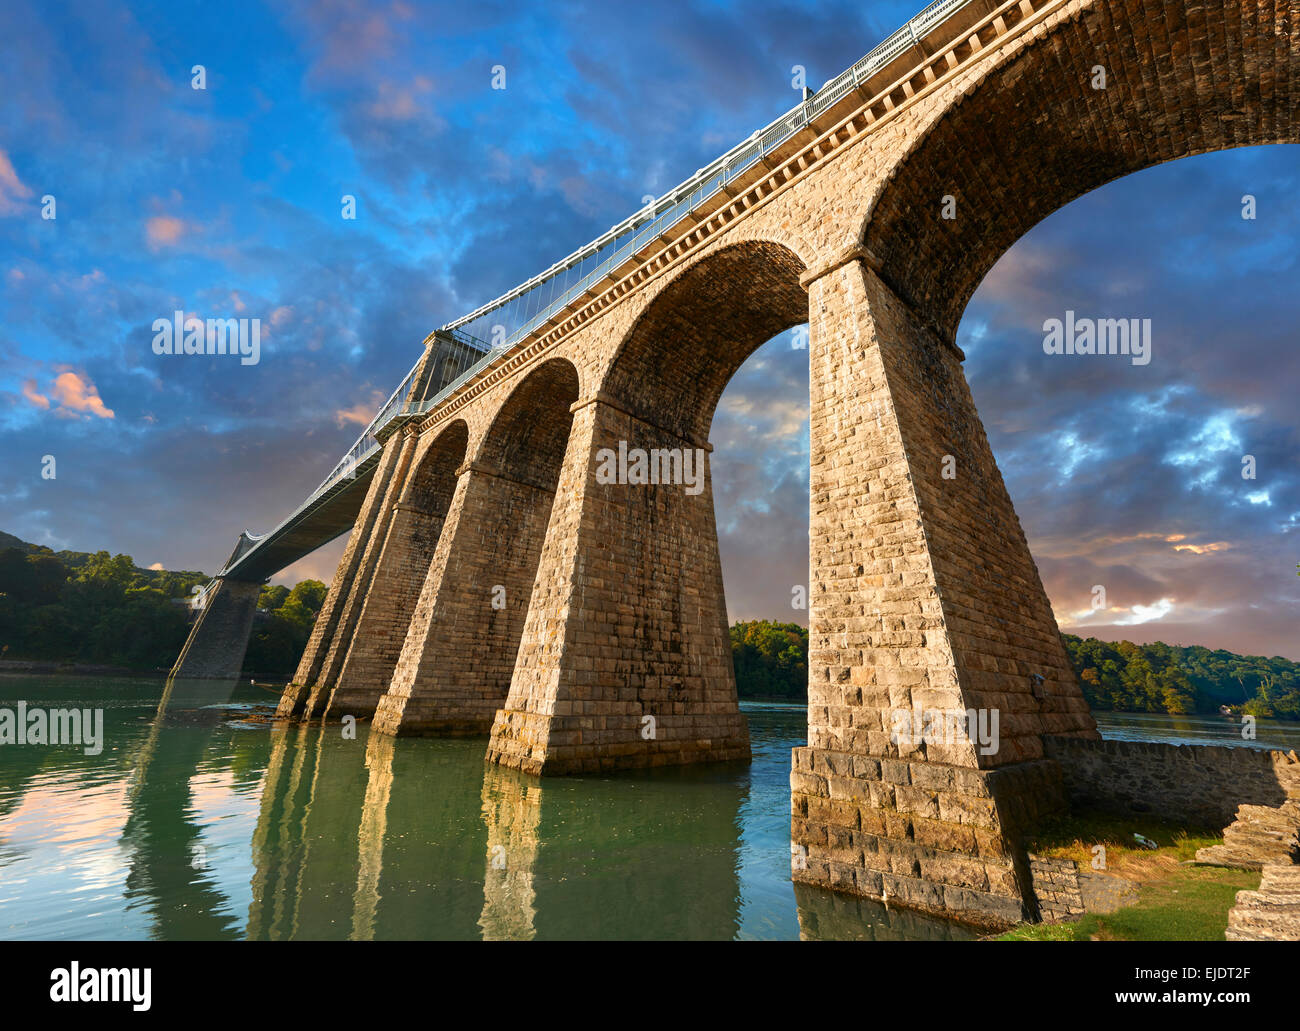 Pont suspendu de Menai, achevée en 1826, la traversée du détroit de Menai entre l'île d'Anglesey et de la partie continentale du pays de Galles Banque D'Images